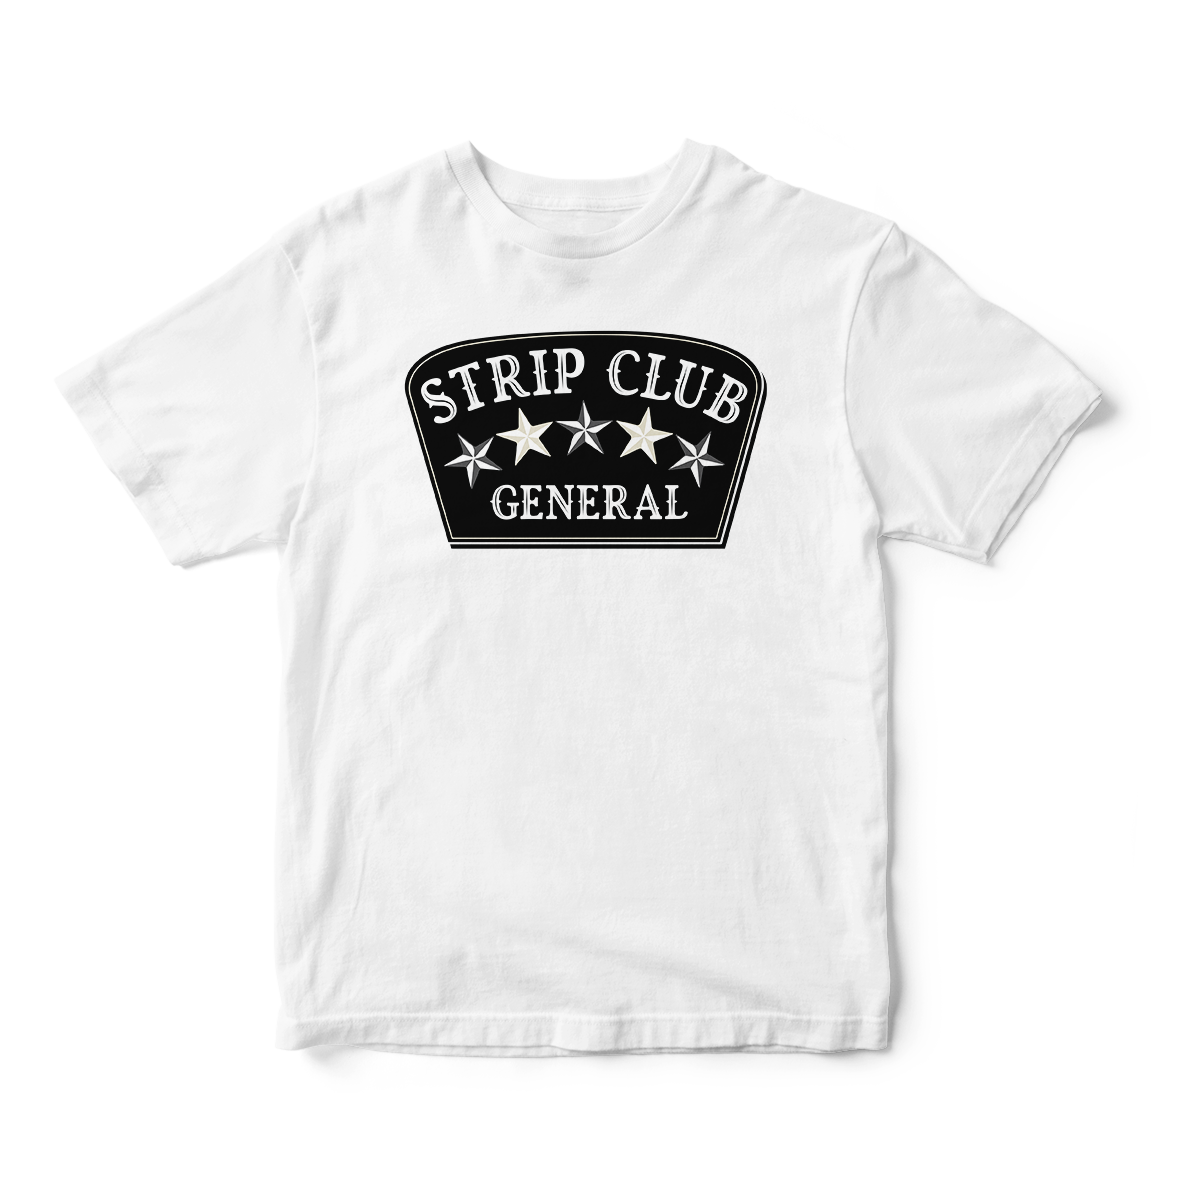 Strip Club General in Tan Short Sleeve Tee